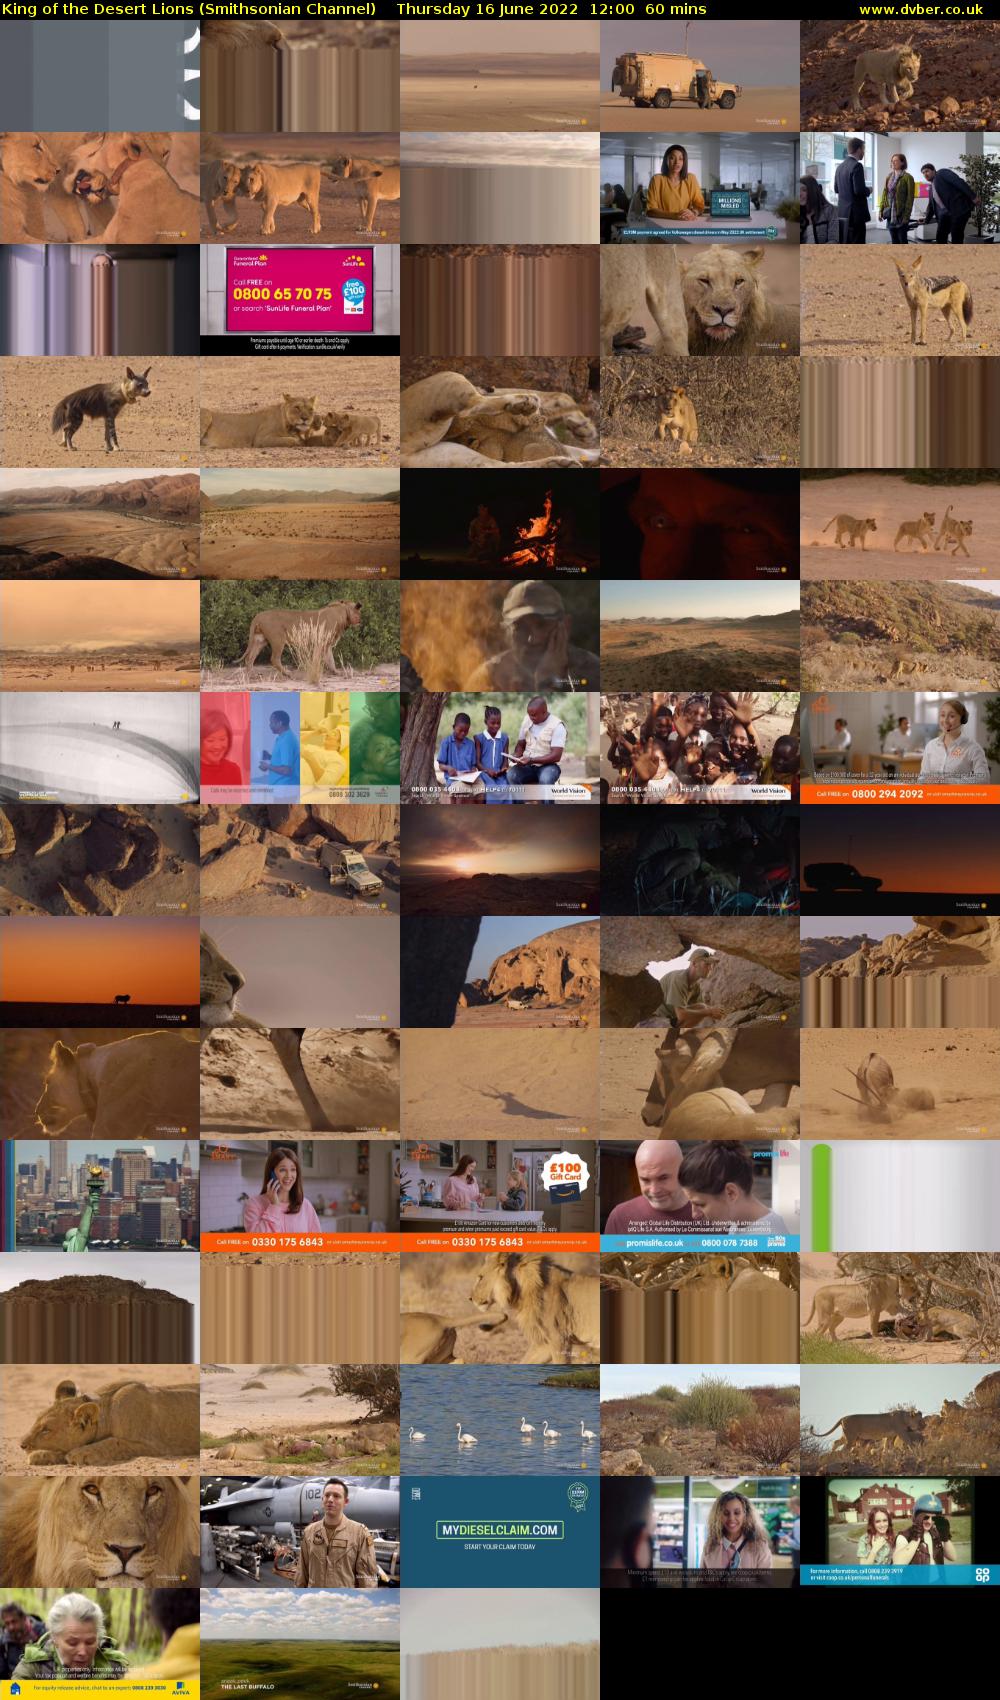 King of the Desert Lions (Smithsonian Channel) Thursday 16 June 2022 12:00 - 13:00